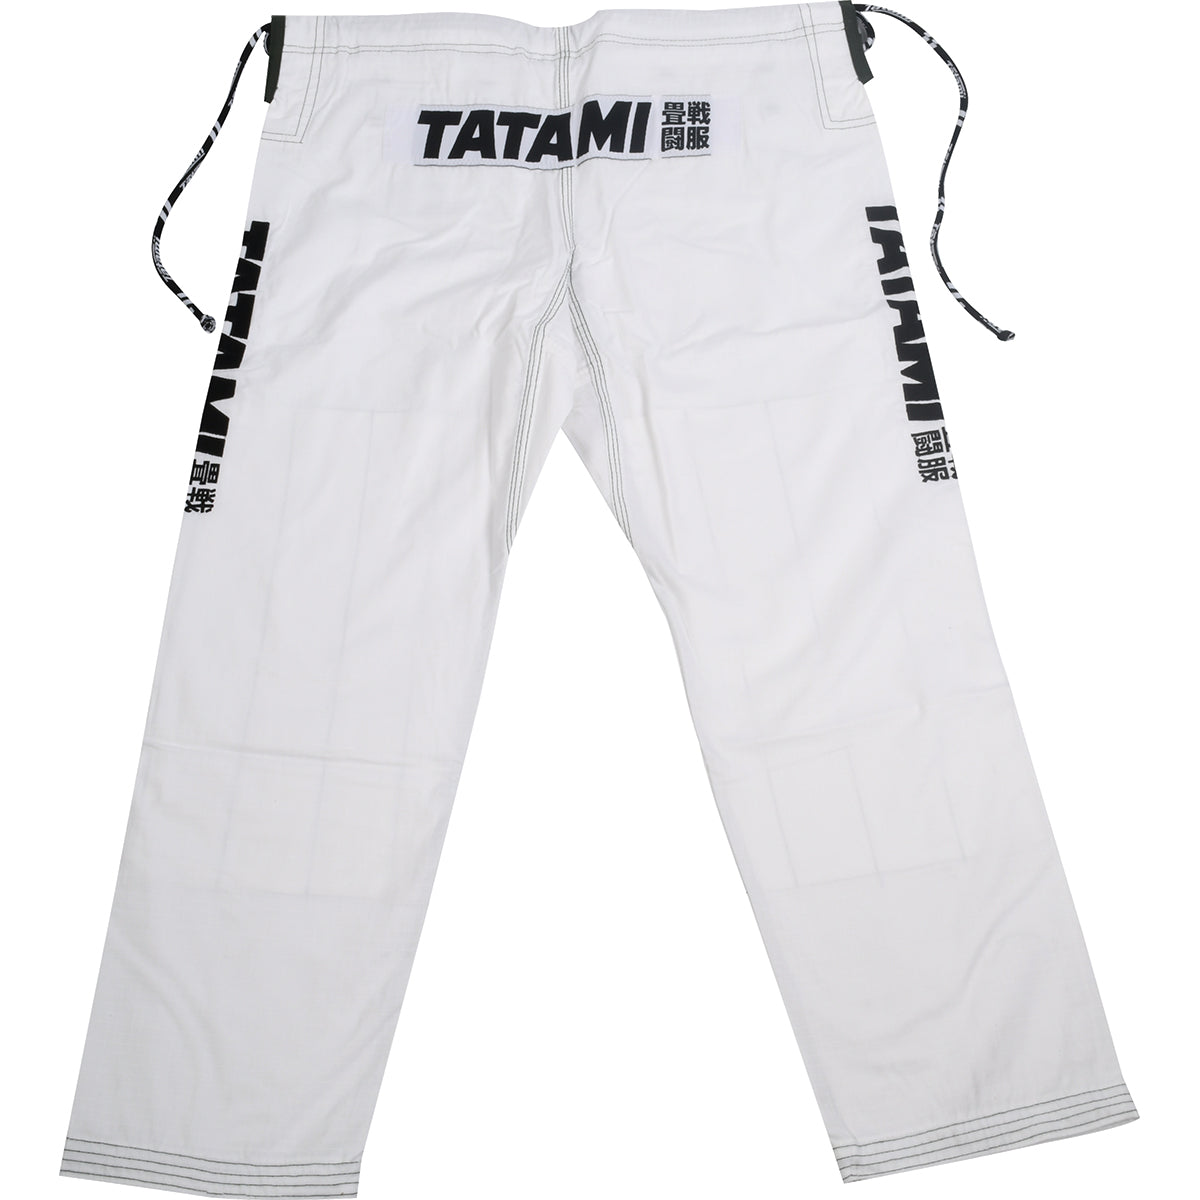 Tatami Fightwear Women's Essential BJJ Gi Tatami Fightwear